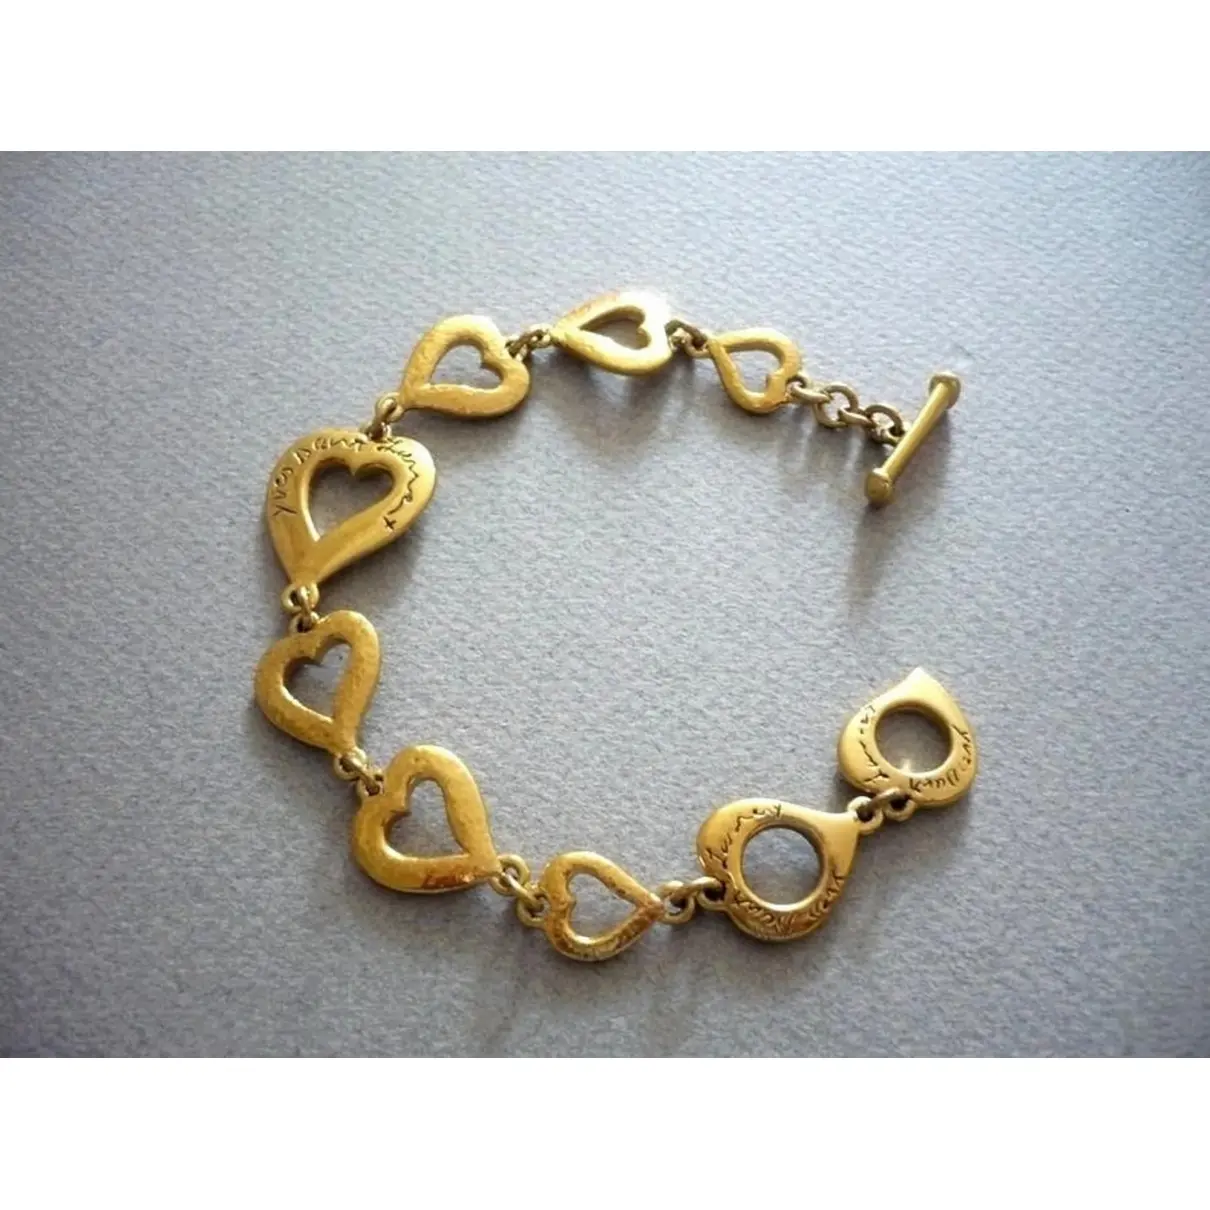 Yves Saint Laurent Gold Metal Bracelet for sale - Vintage